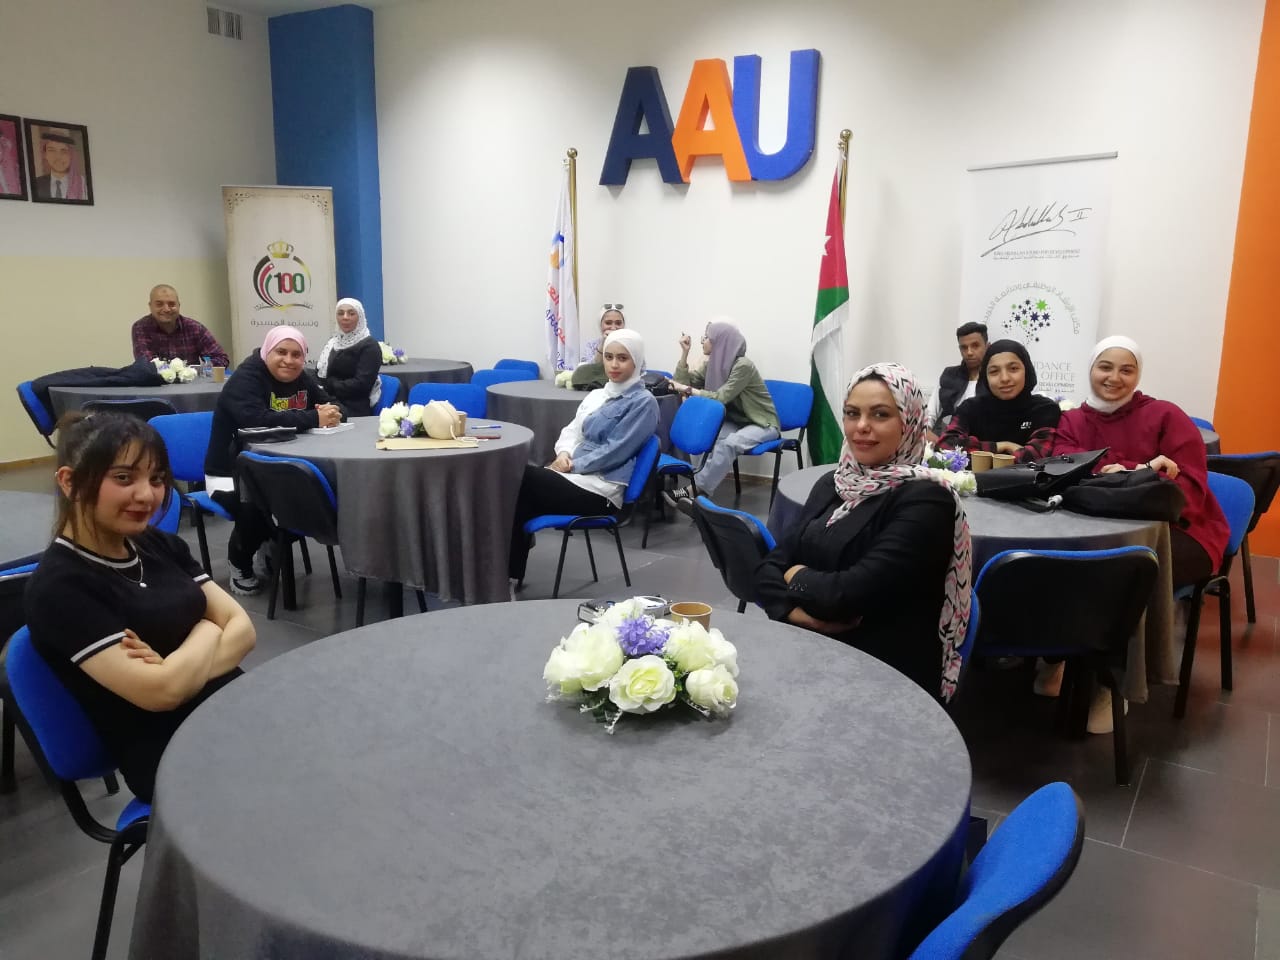 ورشة دور المدقق وأخلاقيات المهنة لطلبة عمان العربية